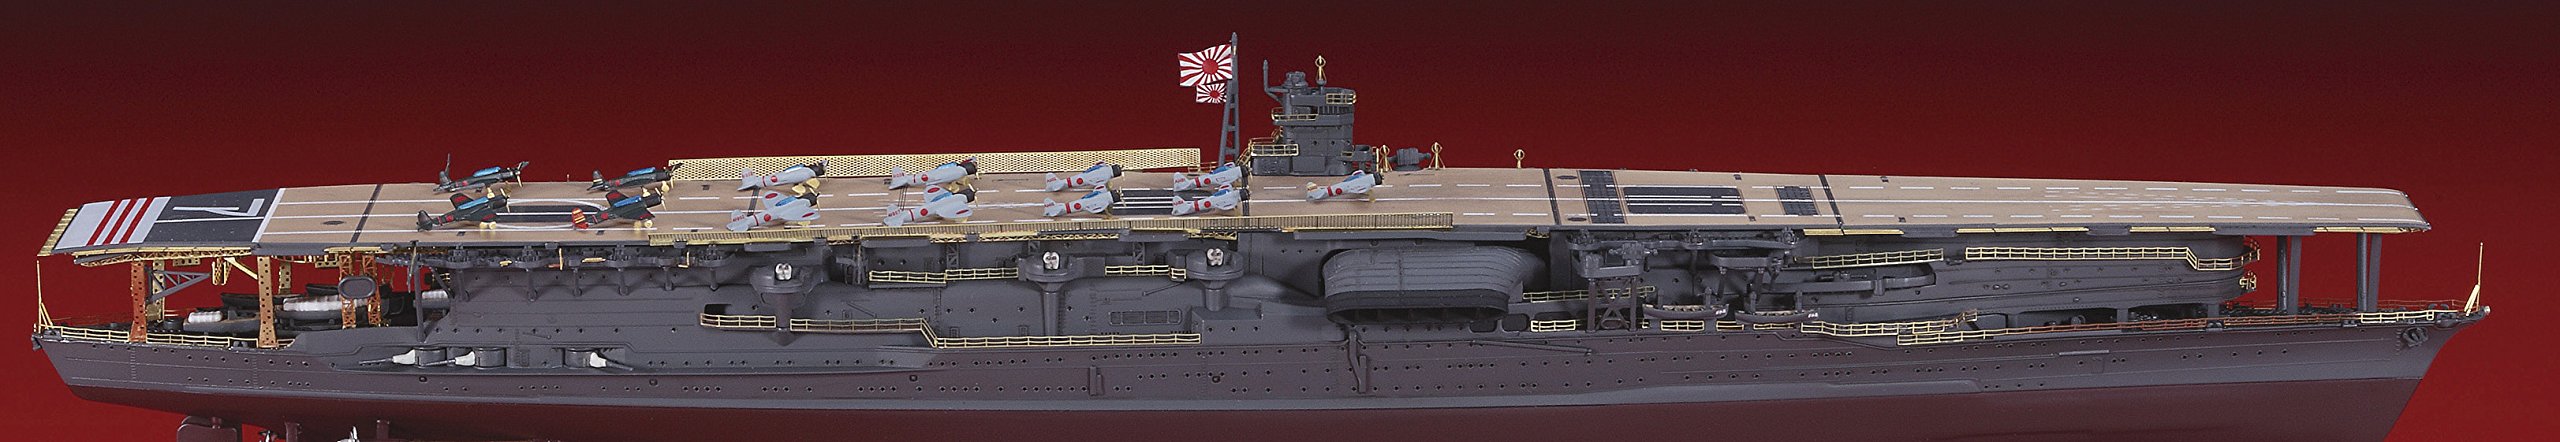 Hasegawa 30036 1/700 Japanese Navy Aircraft Carrier Akagi Detail Up Parts Set Plastic Model Parts